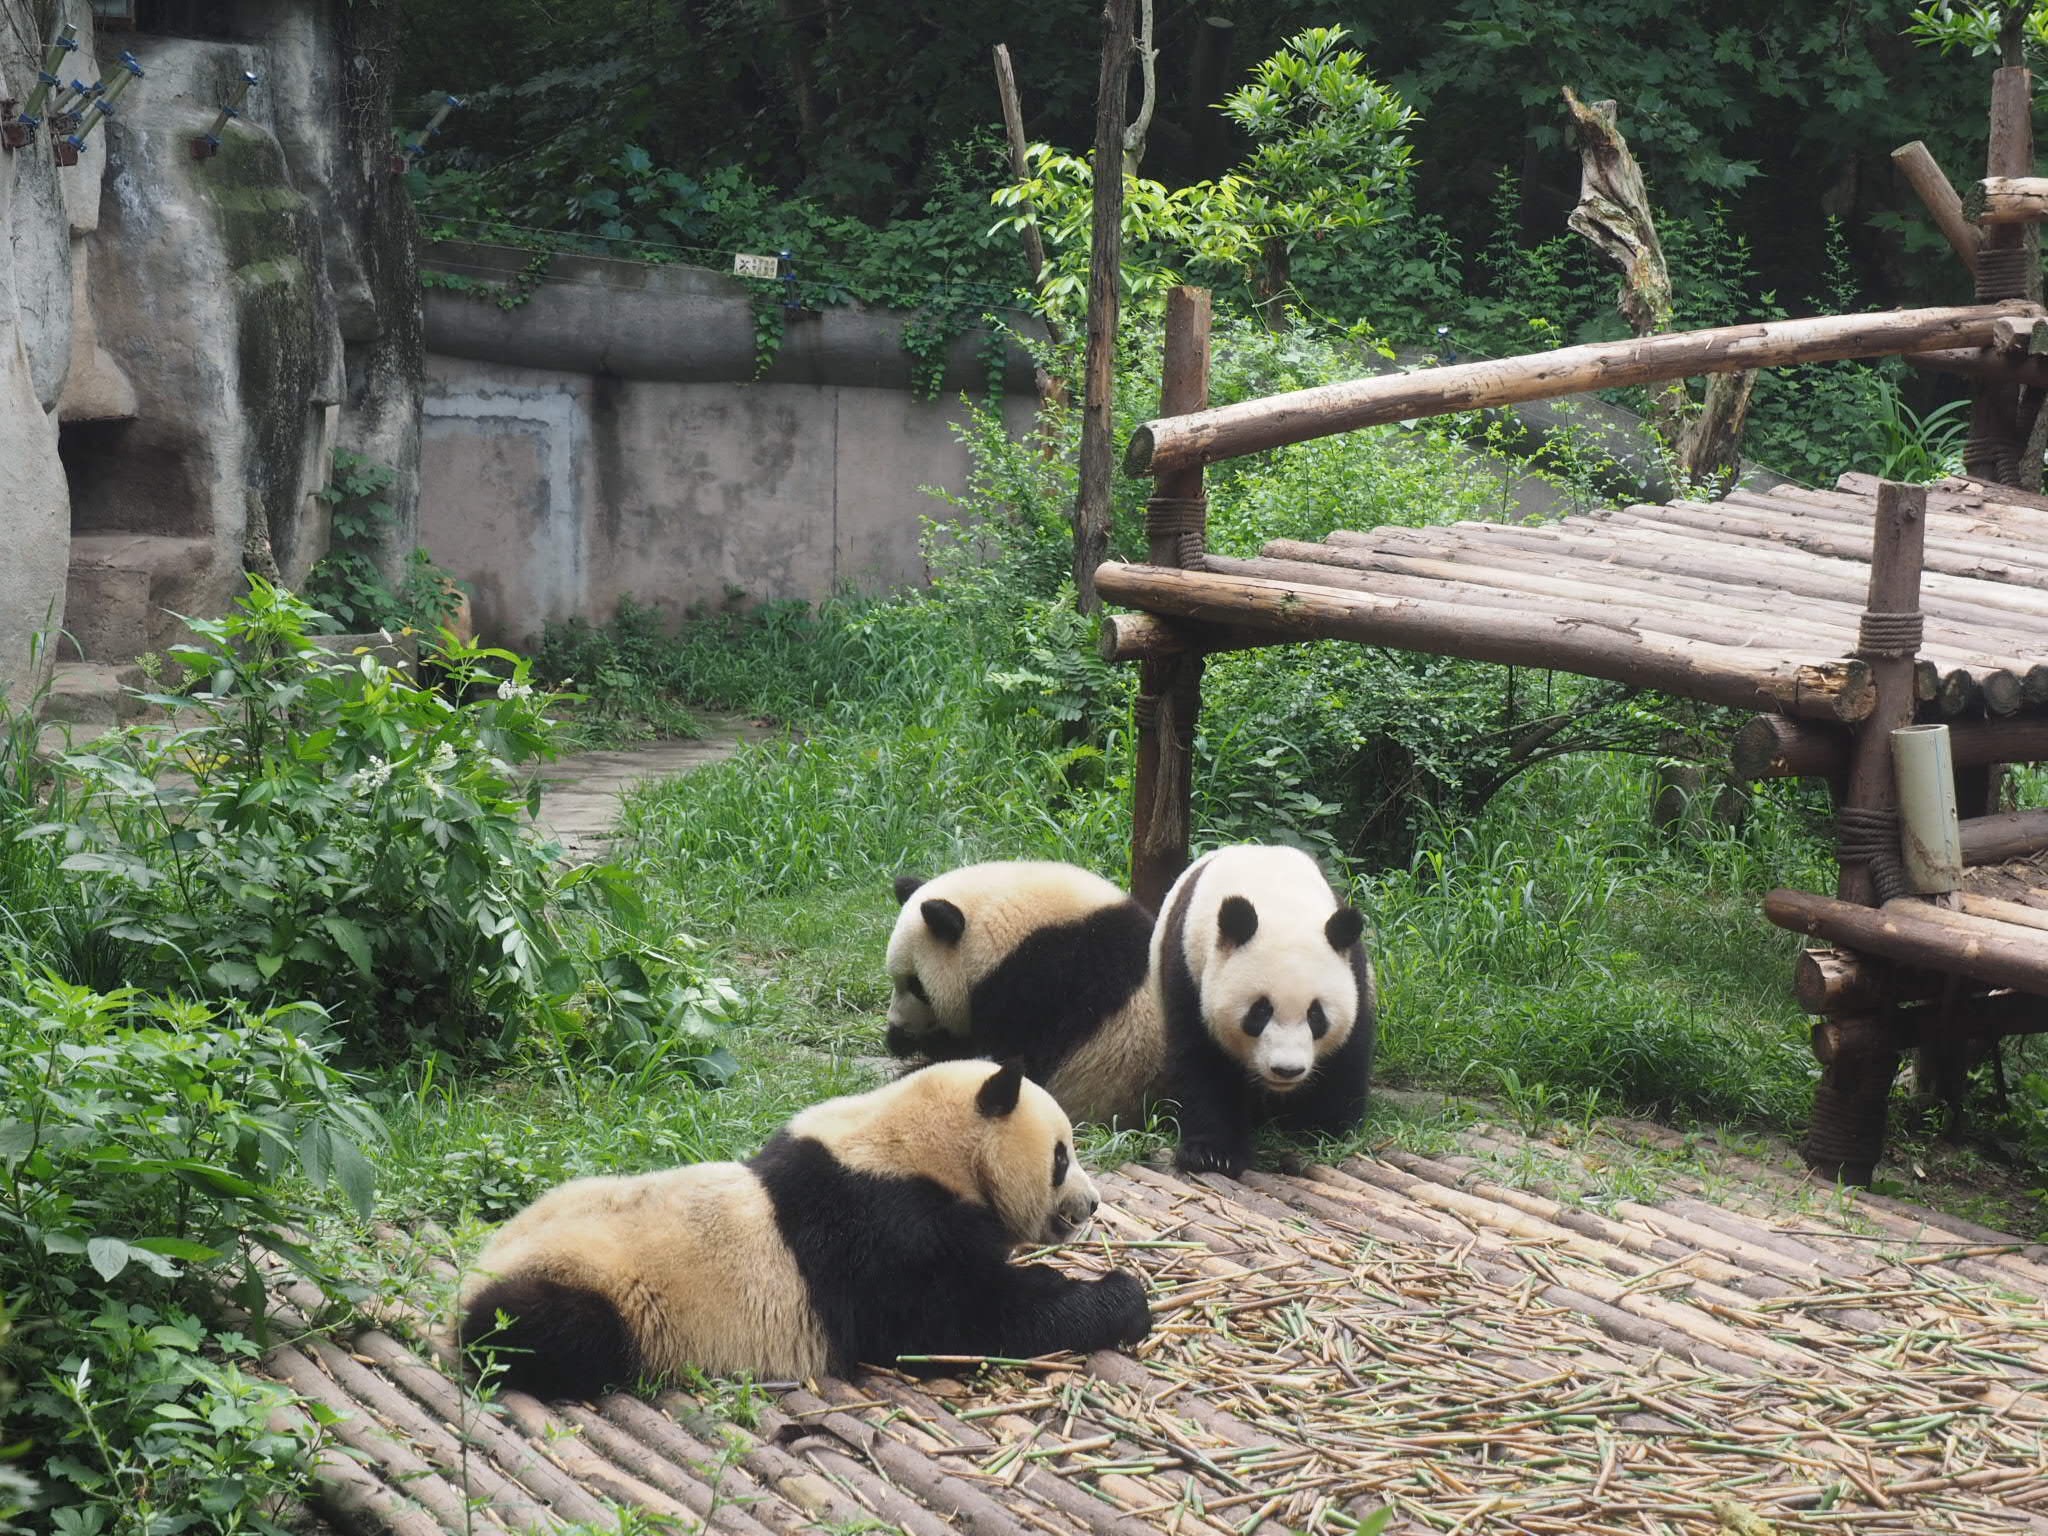 panda tours china